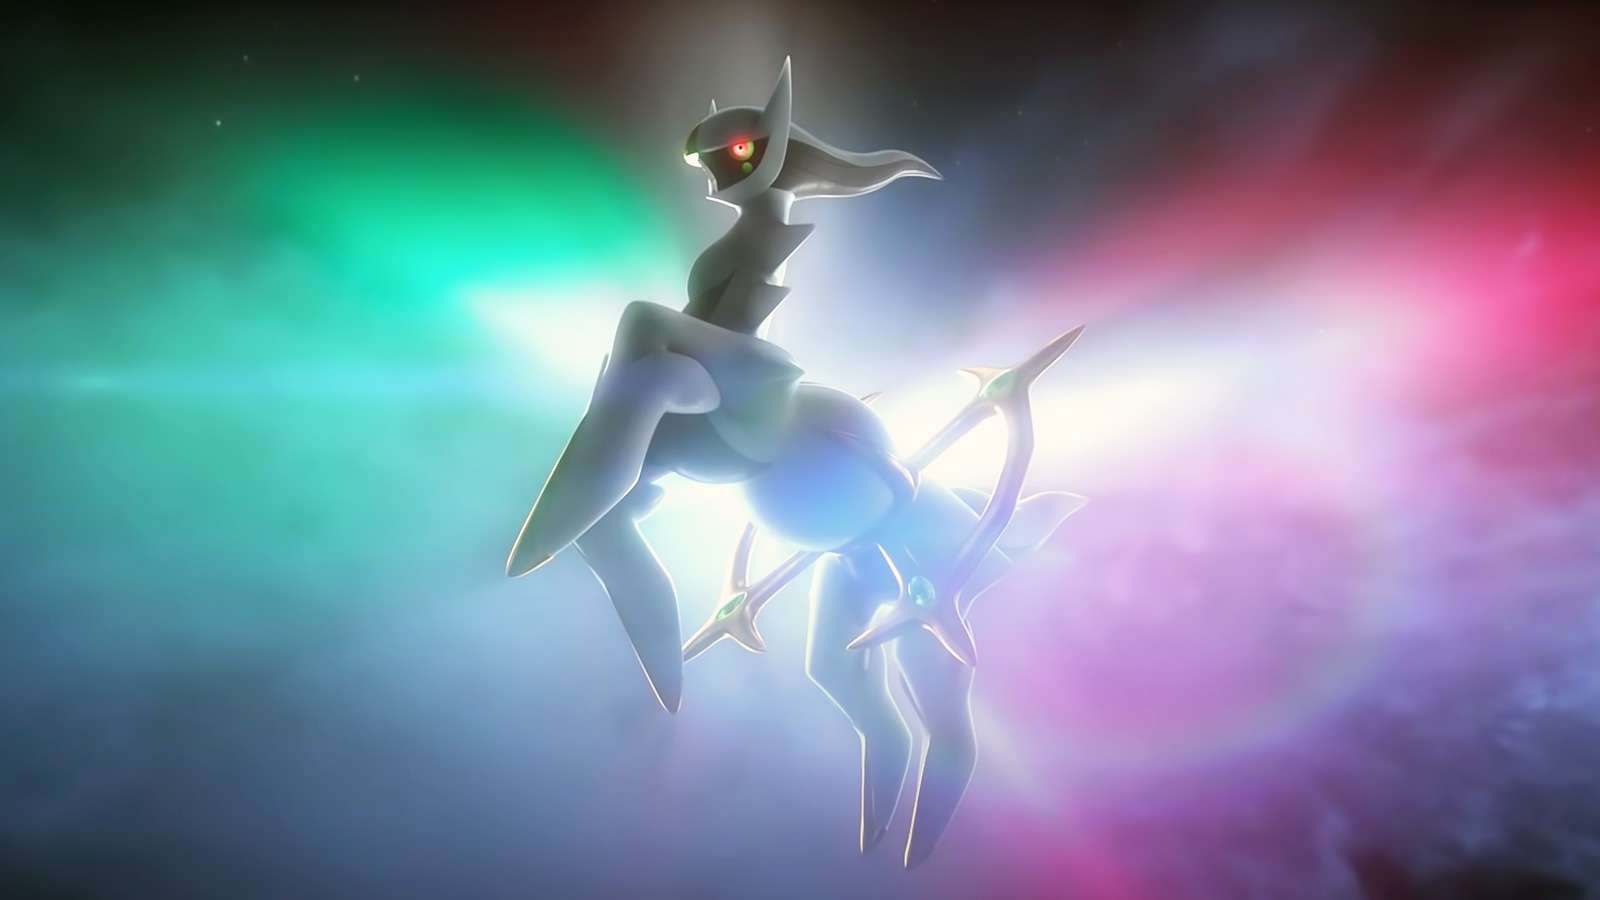 Screenshot of Legendary Pokemon Arceus in Pokemo Legends trailer.